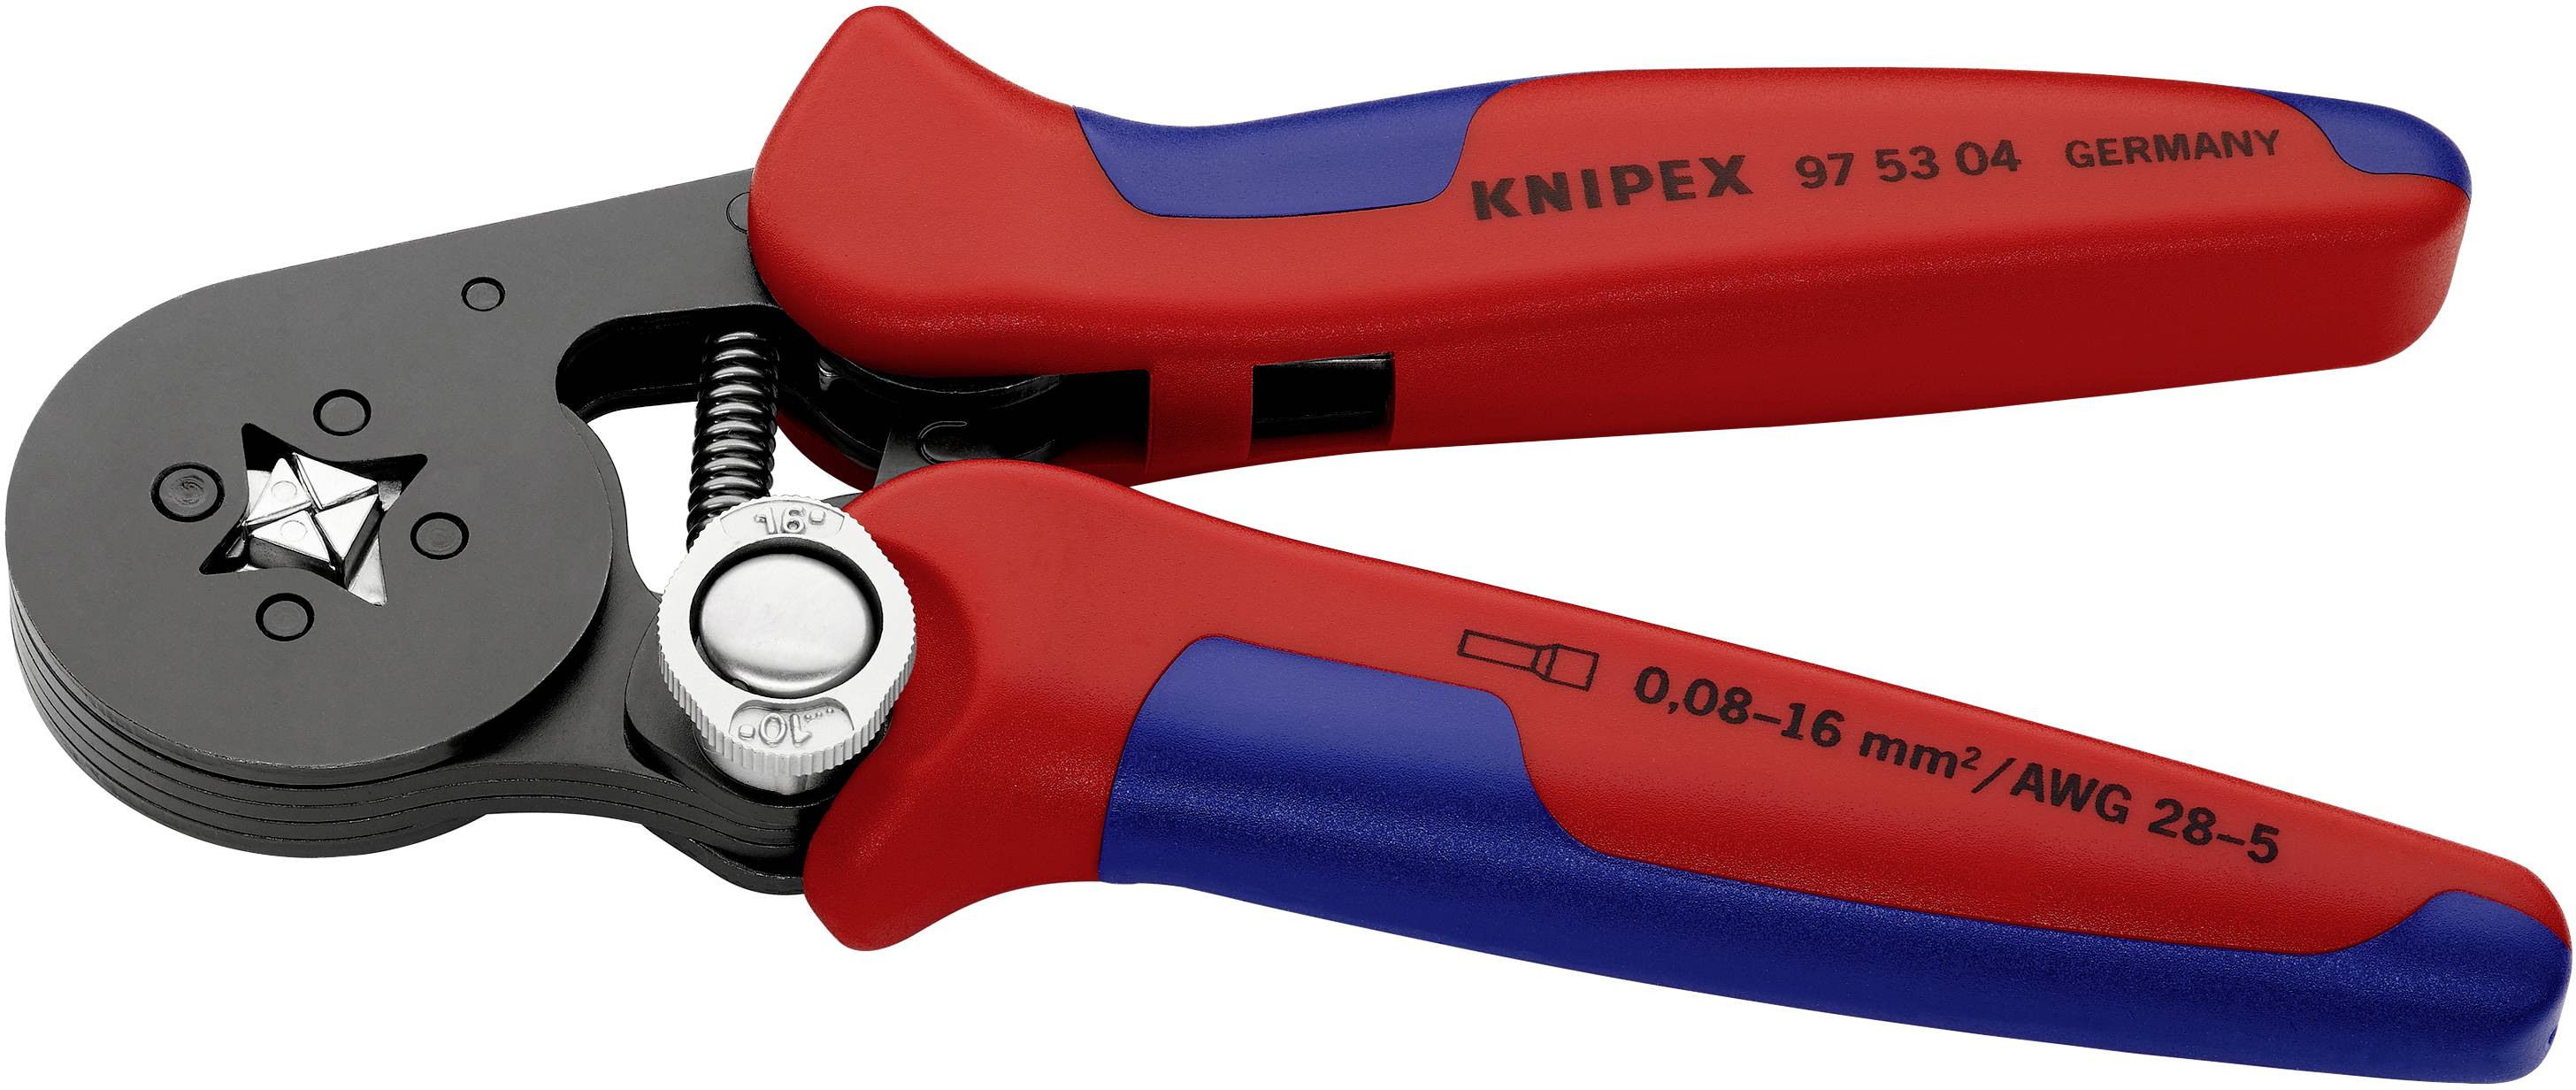 Knipex 97 53 04 97 04 Crimper Ferrules 0.08 up to 16 mm² | Conrad.com